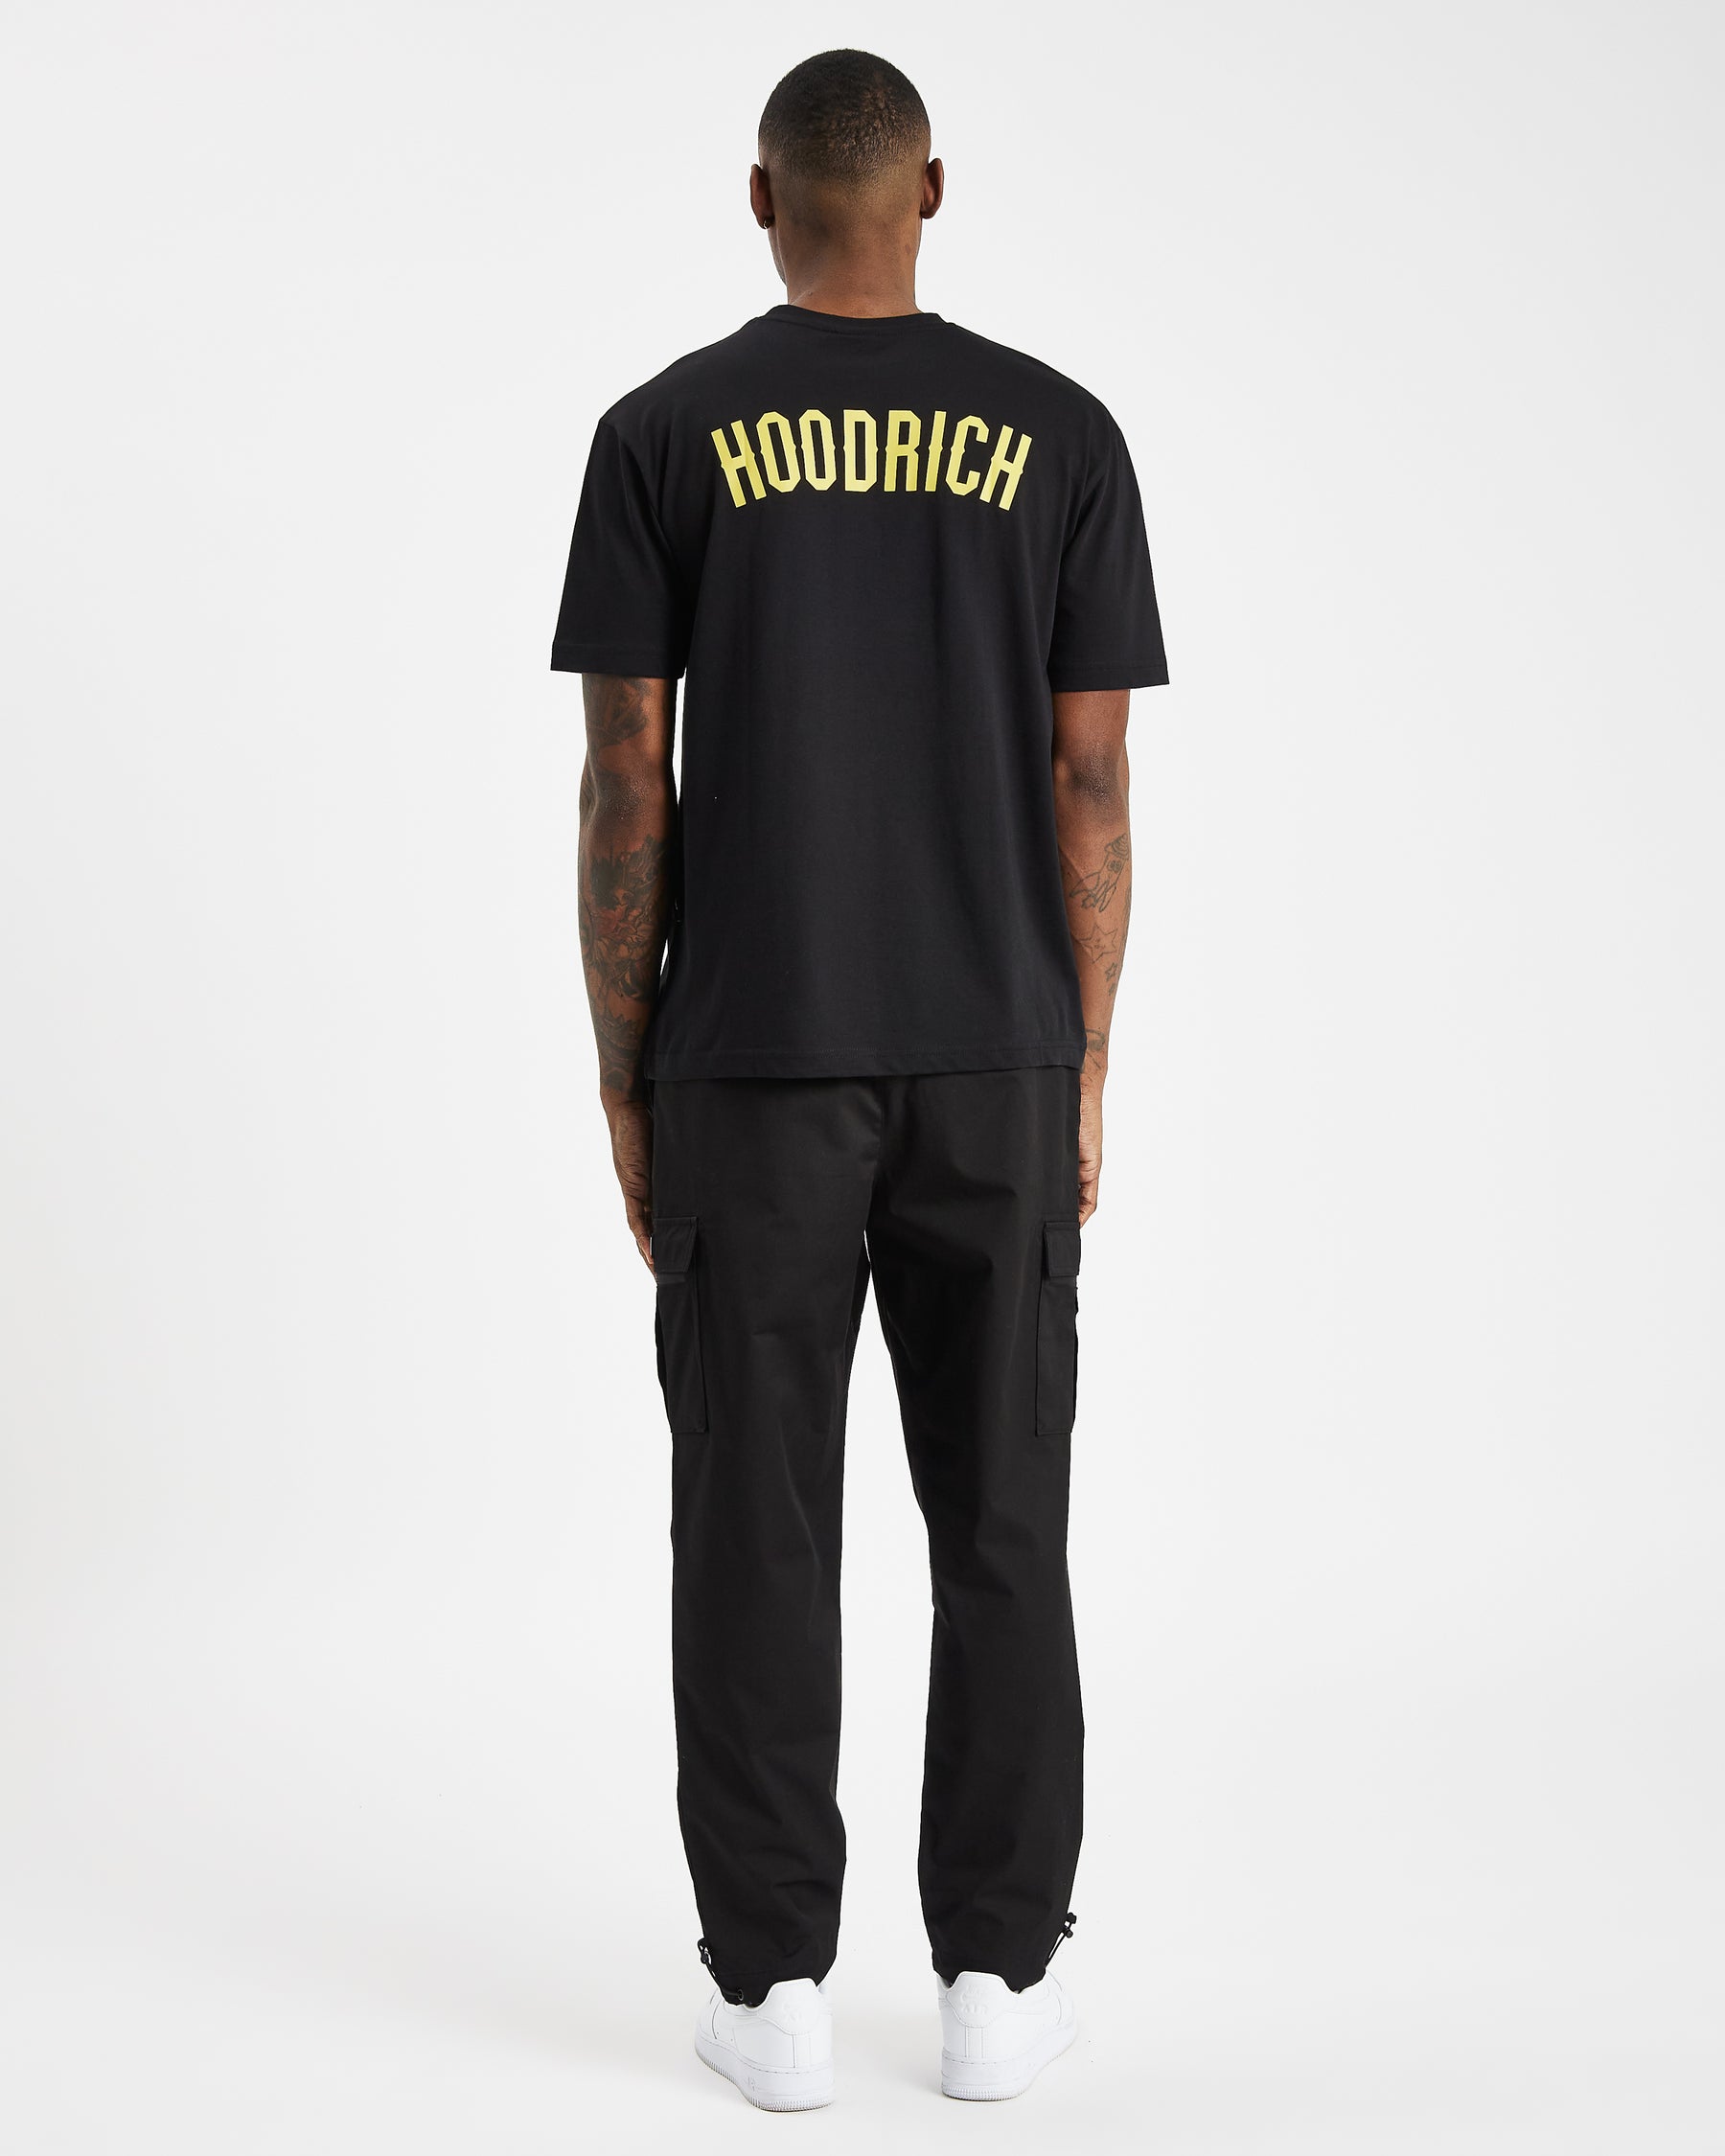 OG Core Double Logo T-Shirt - Black/Illuminating